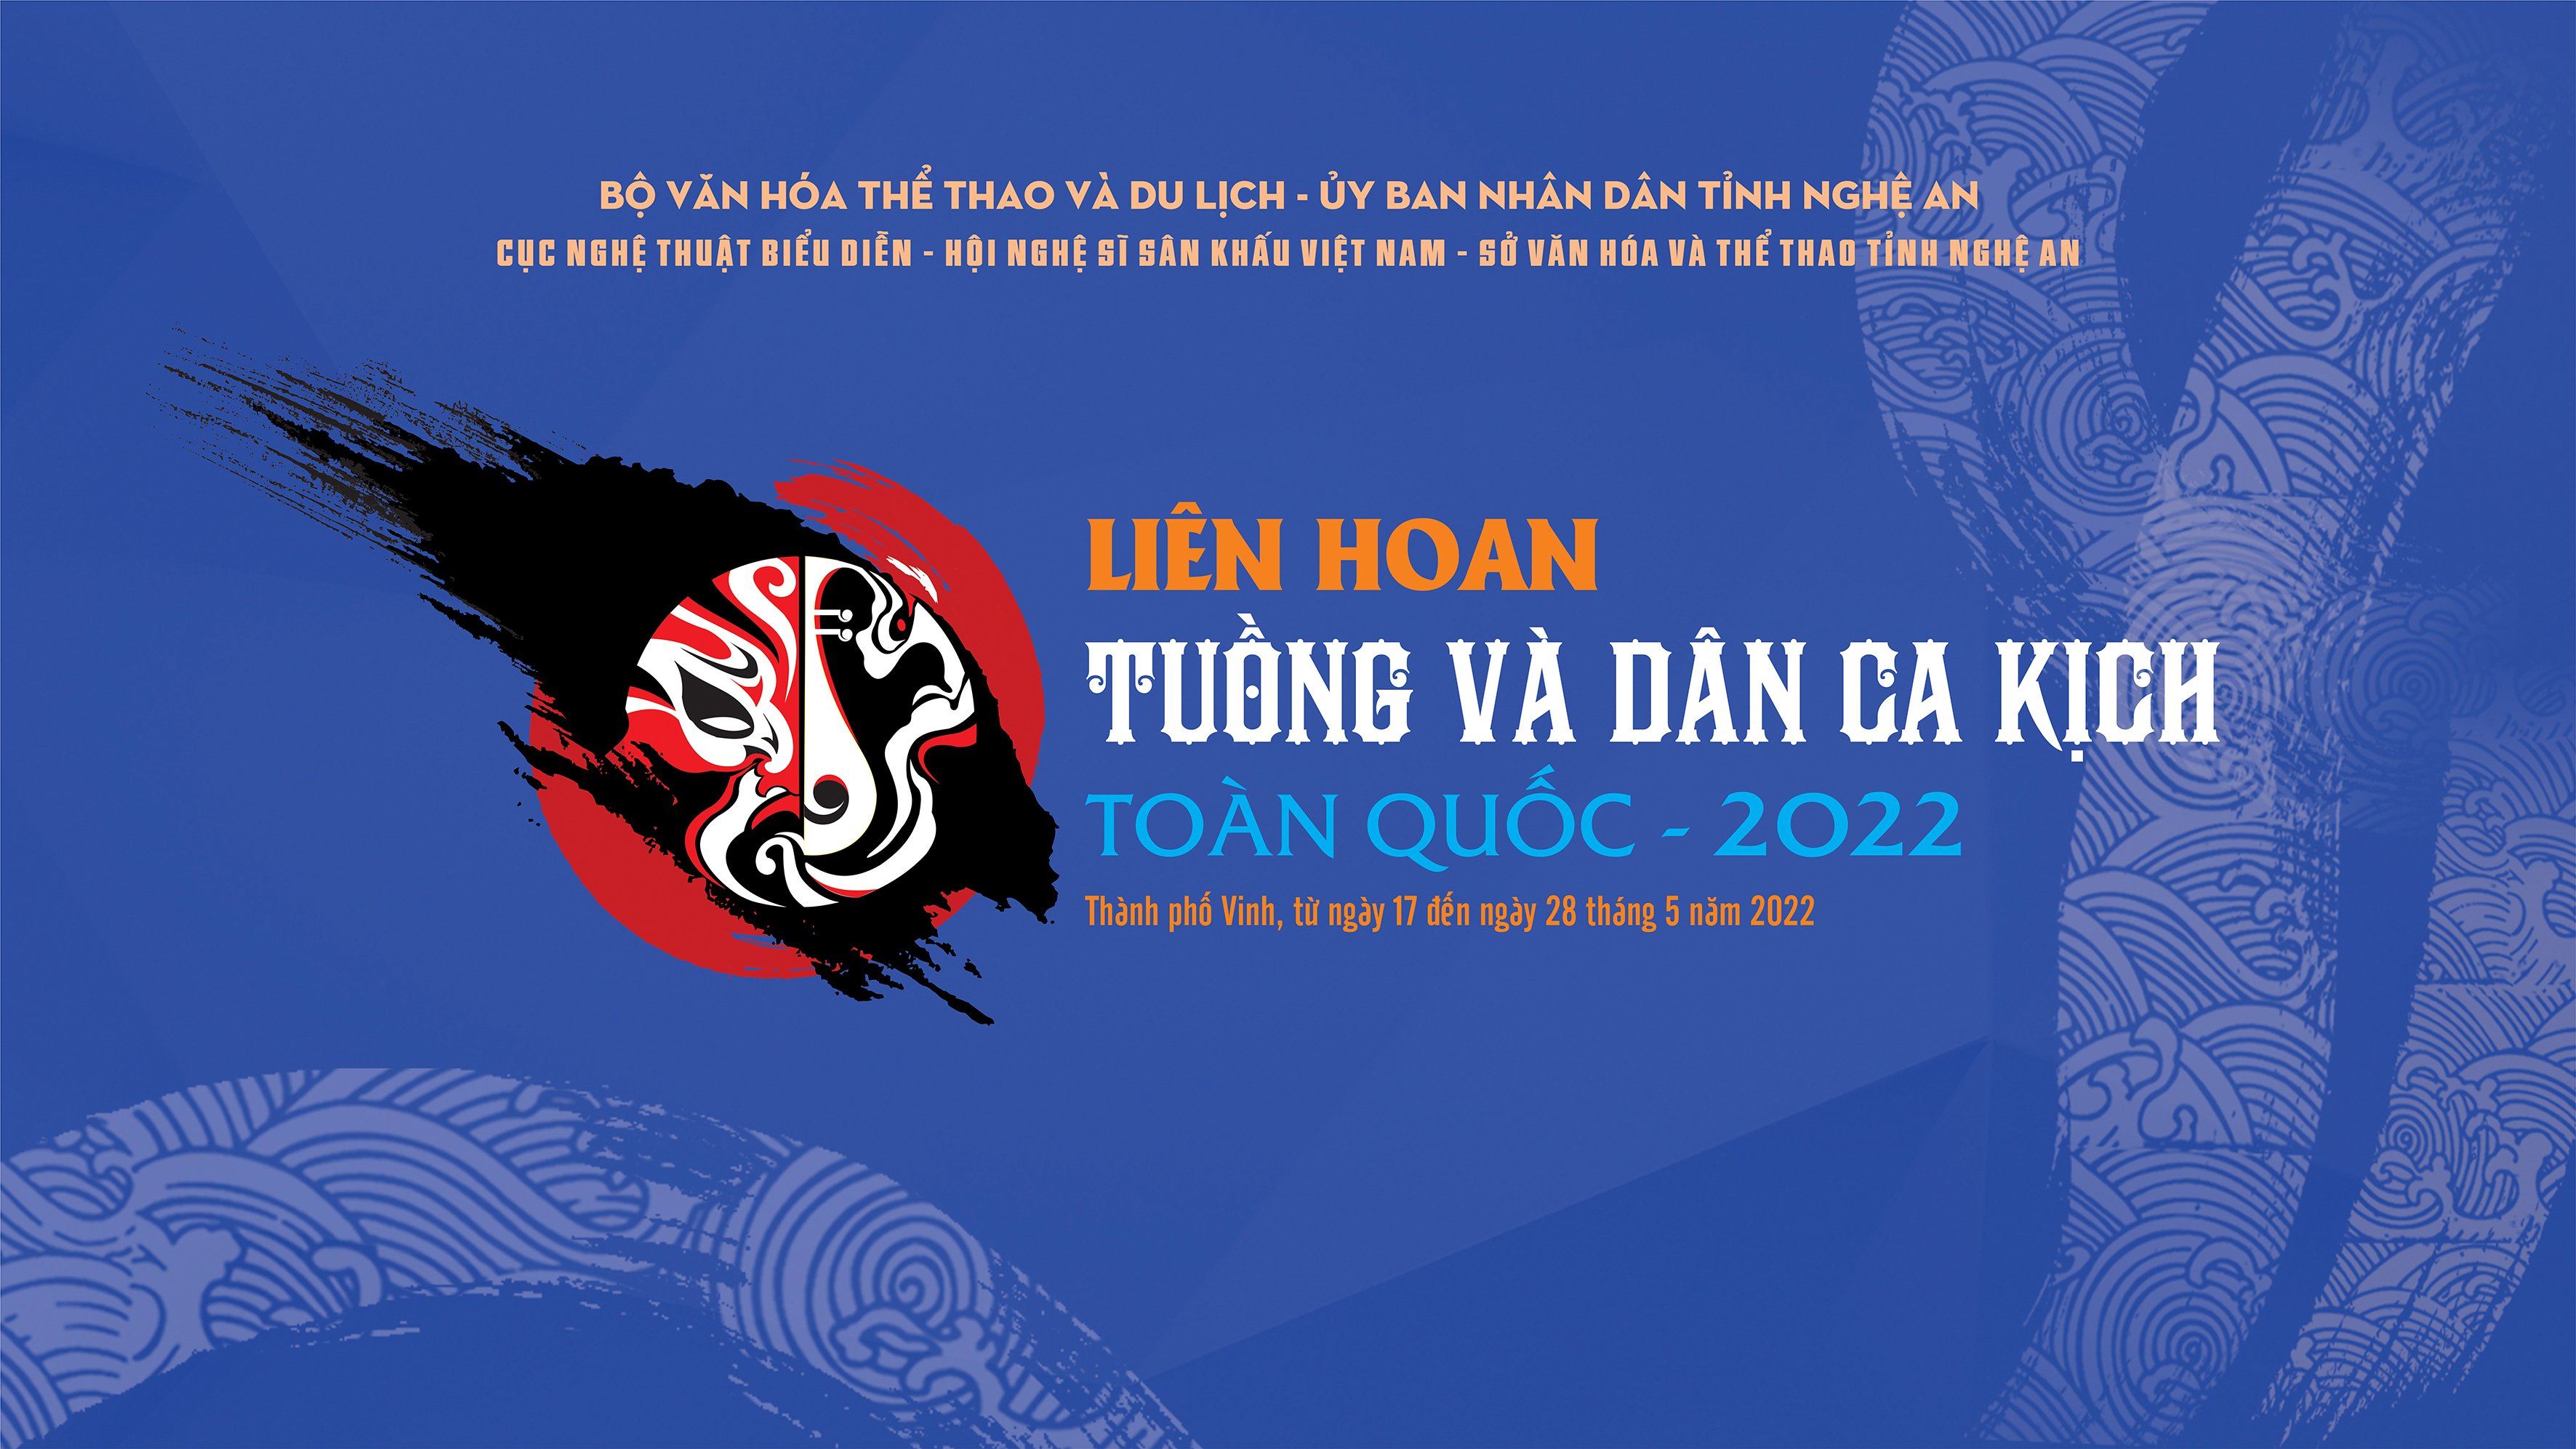 LIÊN HOAN TUỒNG VÀ DÂN CA KỊCH TOÀN QUỐC 2022 - VẦNG SÁNG - Trung tâm nghệ thuật truyền thống  Nghệ An